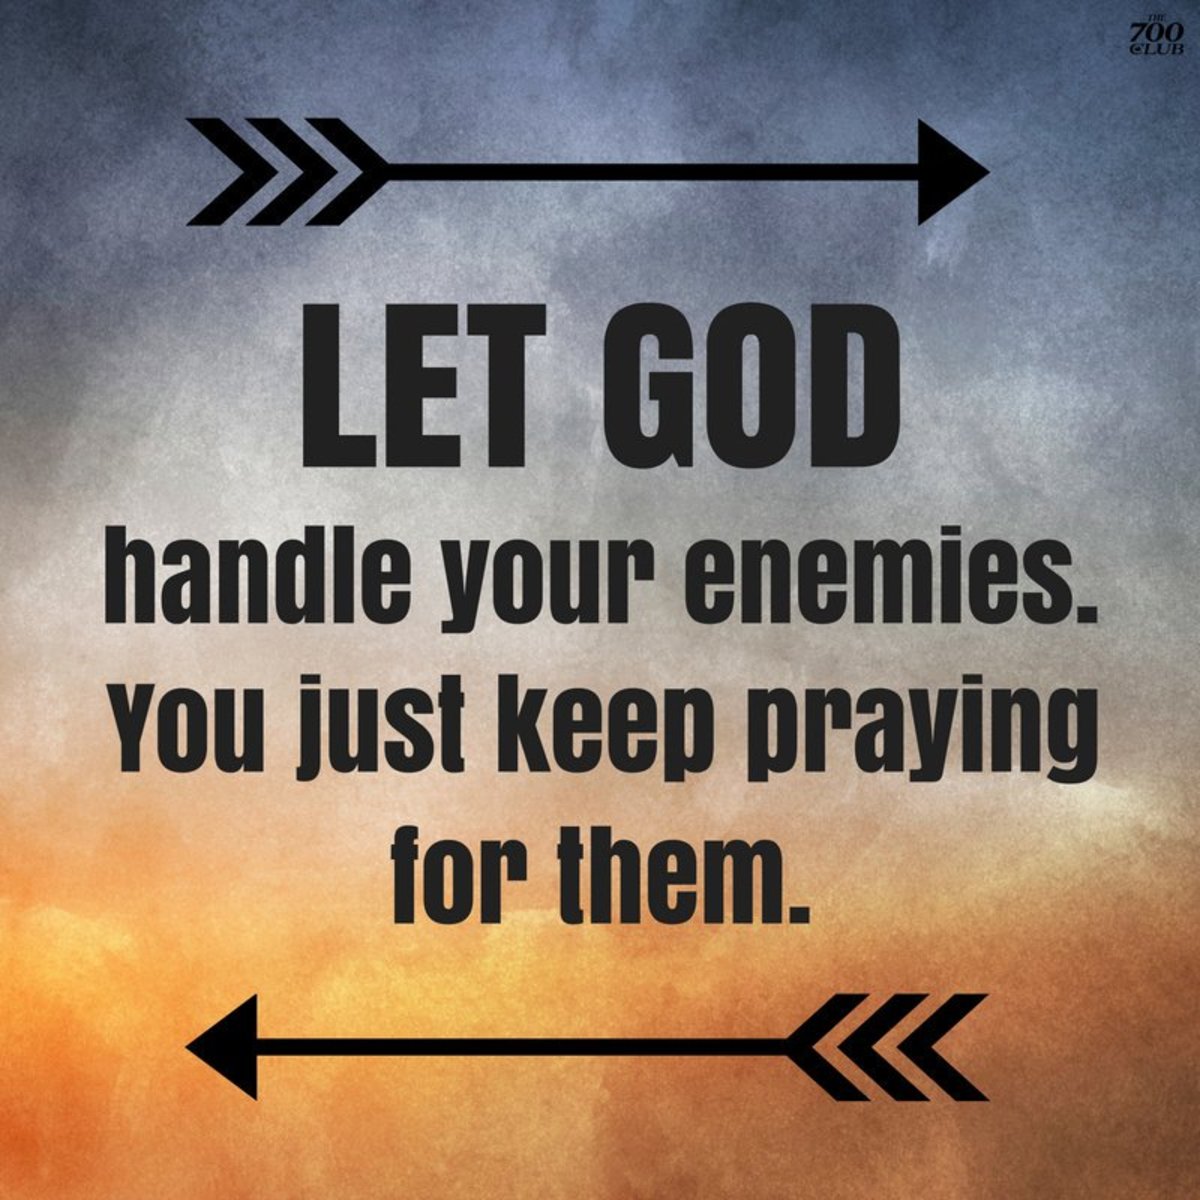 Let God handle your enemies.